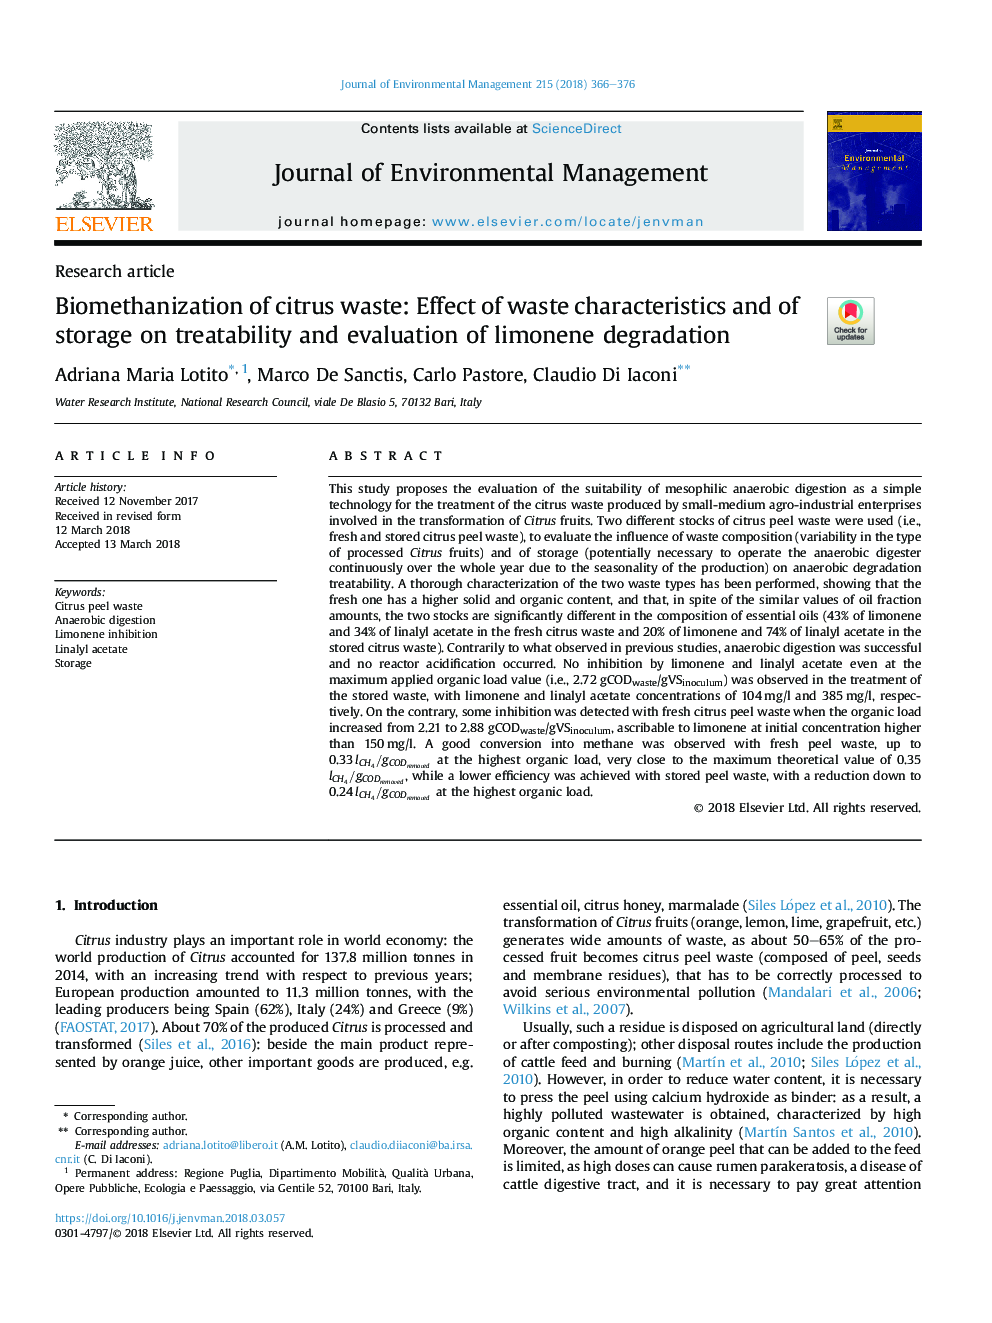 بیومانیزاسیون ضایعات مرکبات: اثر خصوصیات ضایعات و ذخیره سازی بر روی قابلیت درمان و ارزیابی تخریب لیمونن 